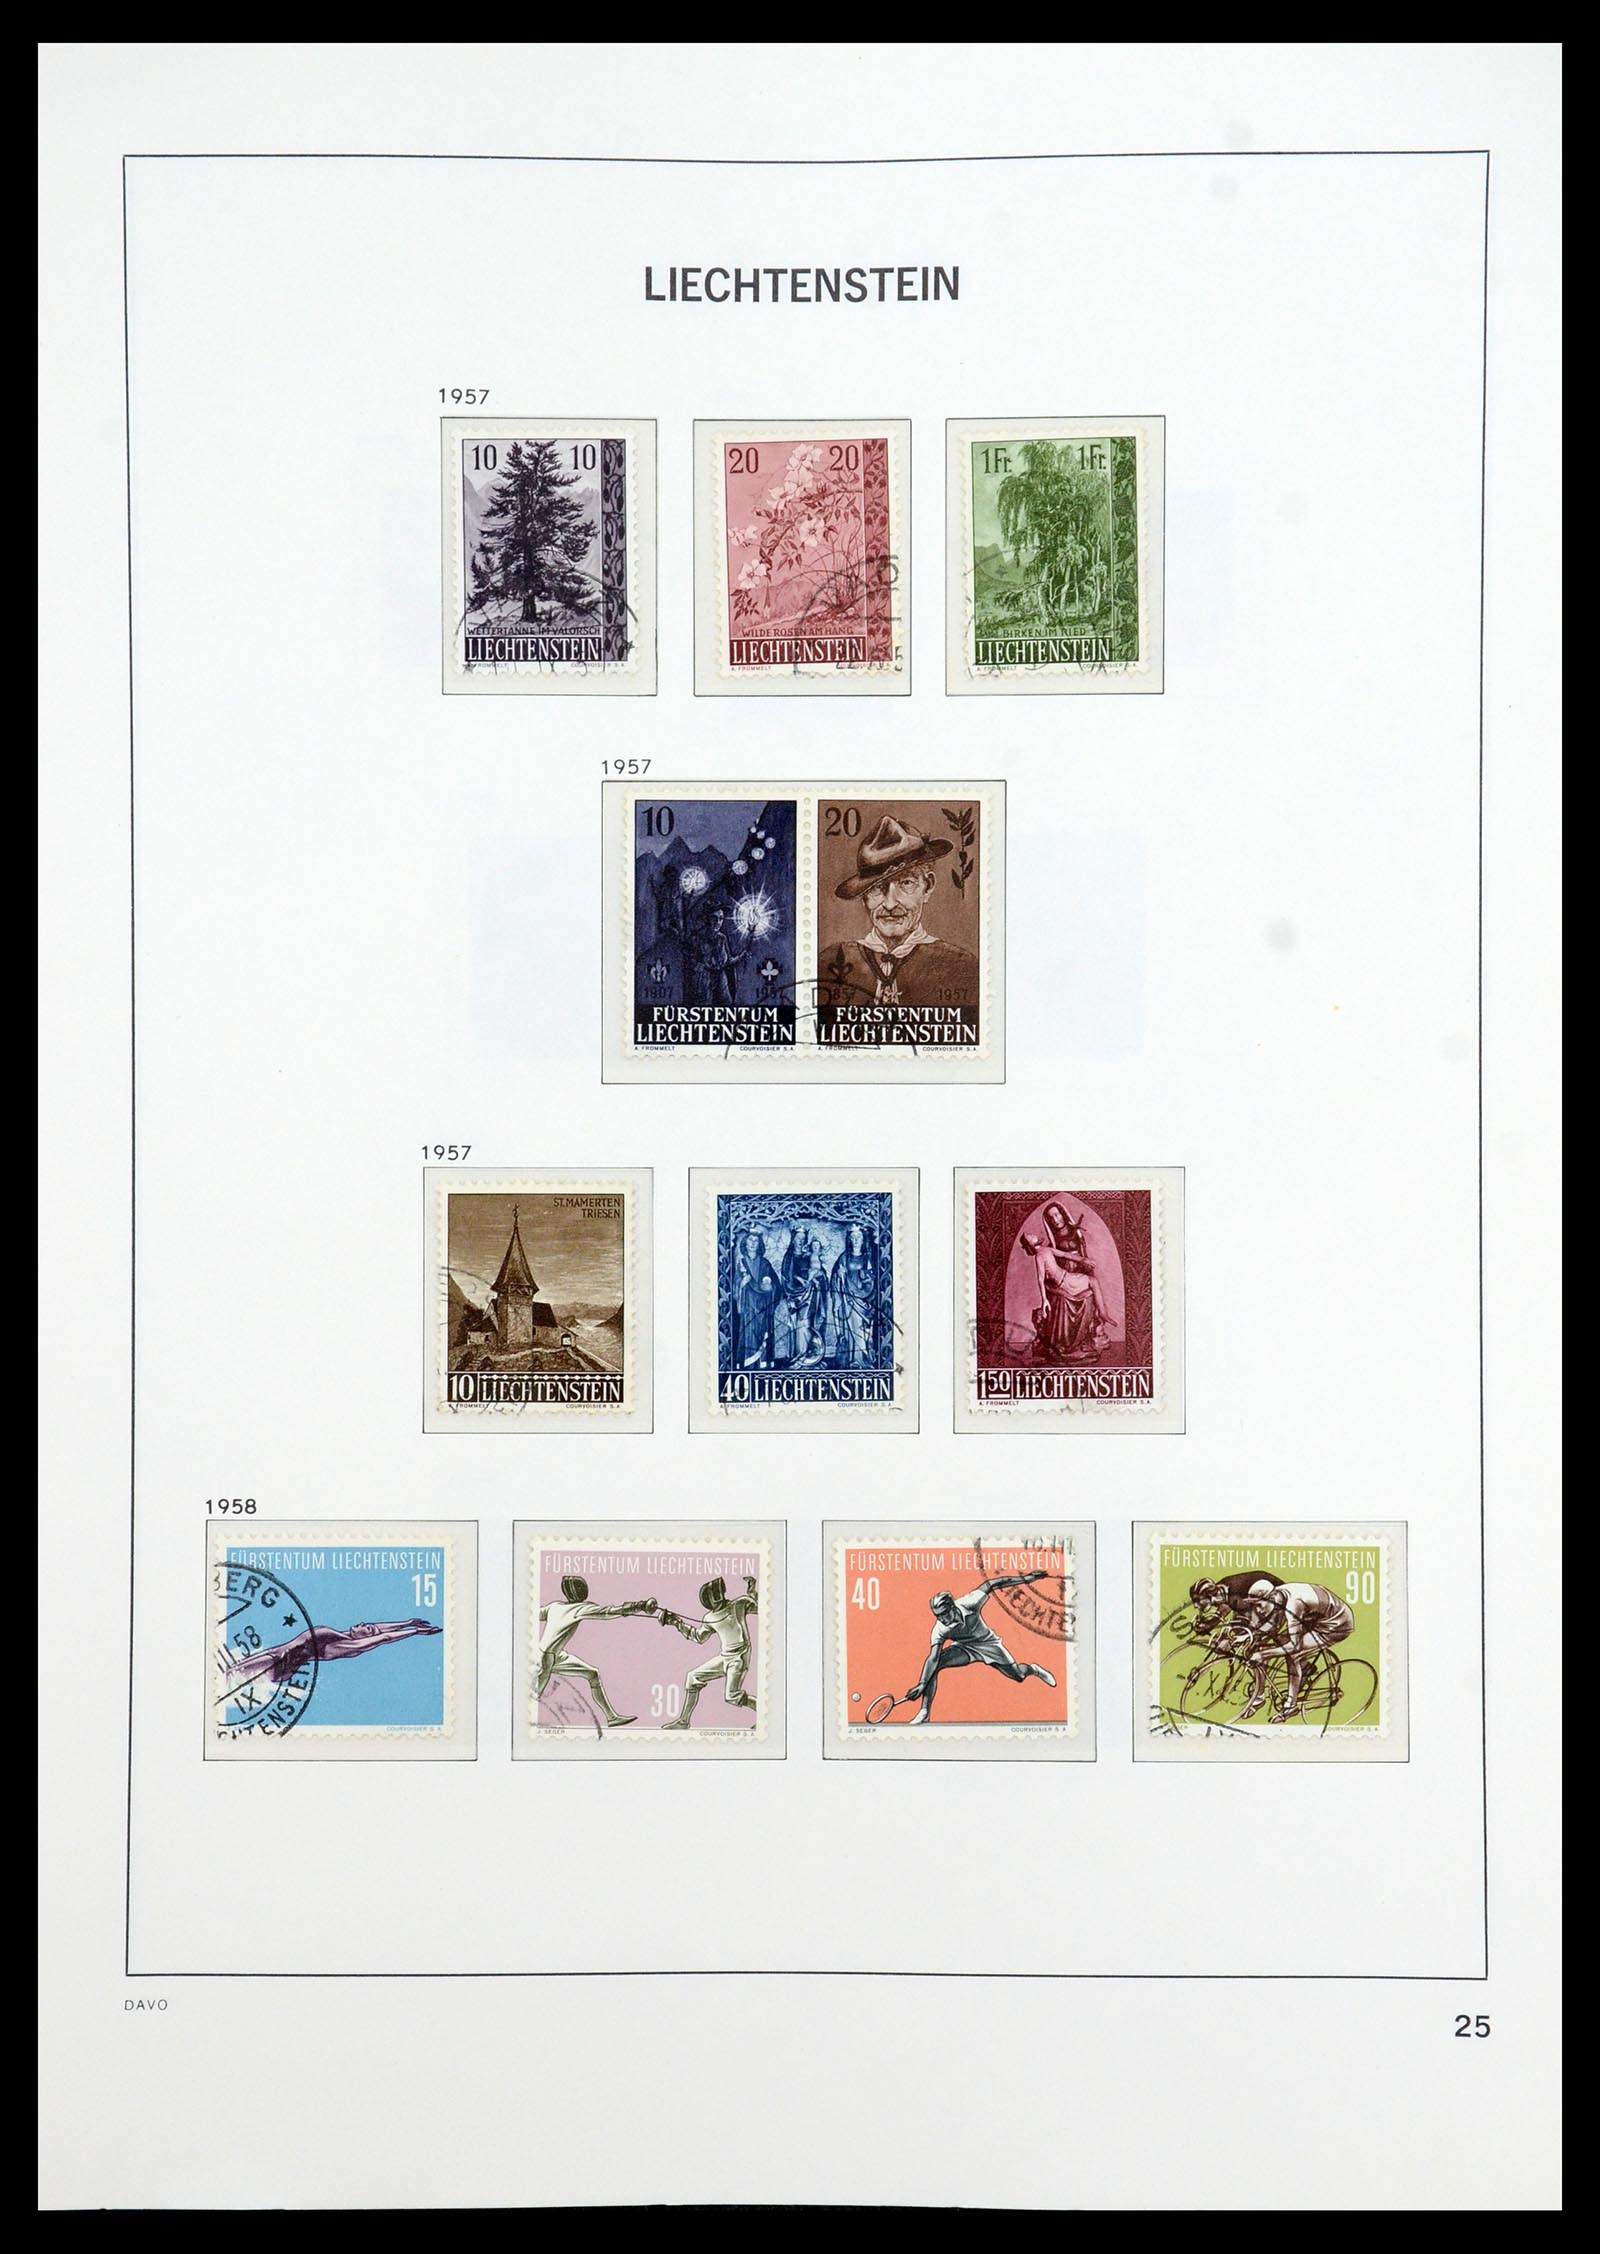 35896 026 - Stamp Collection 35896 Liechtenstein 1912-1990.